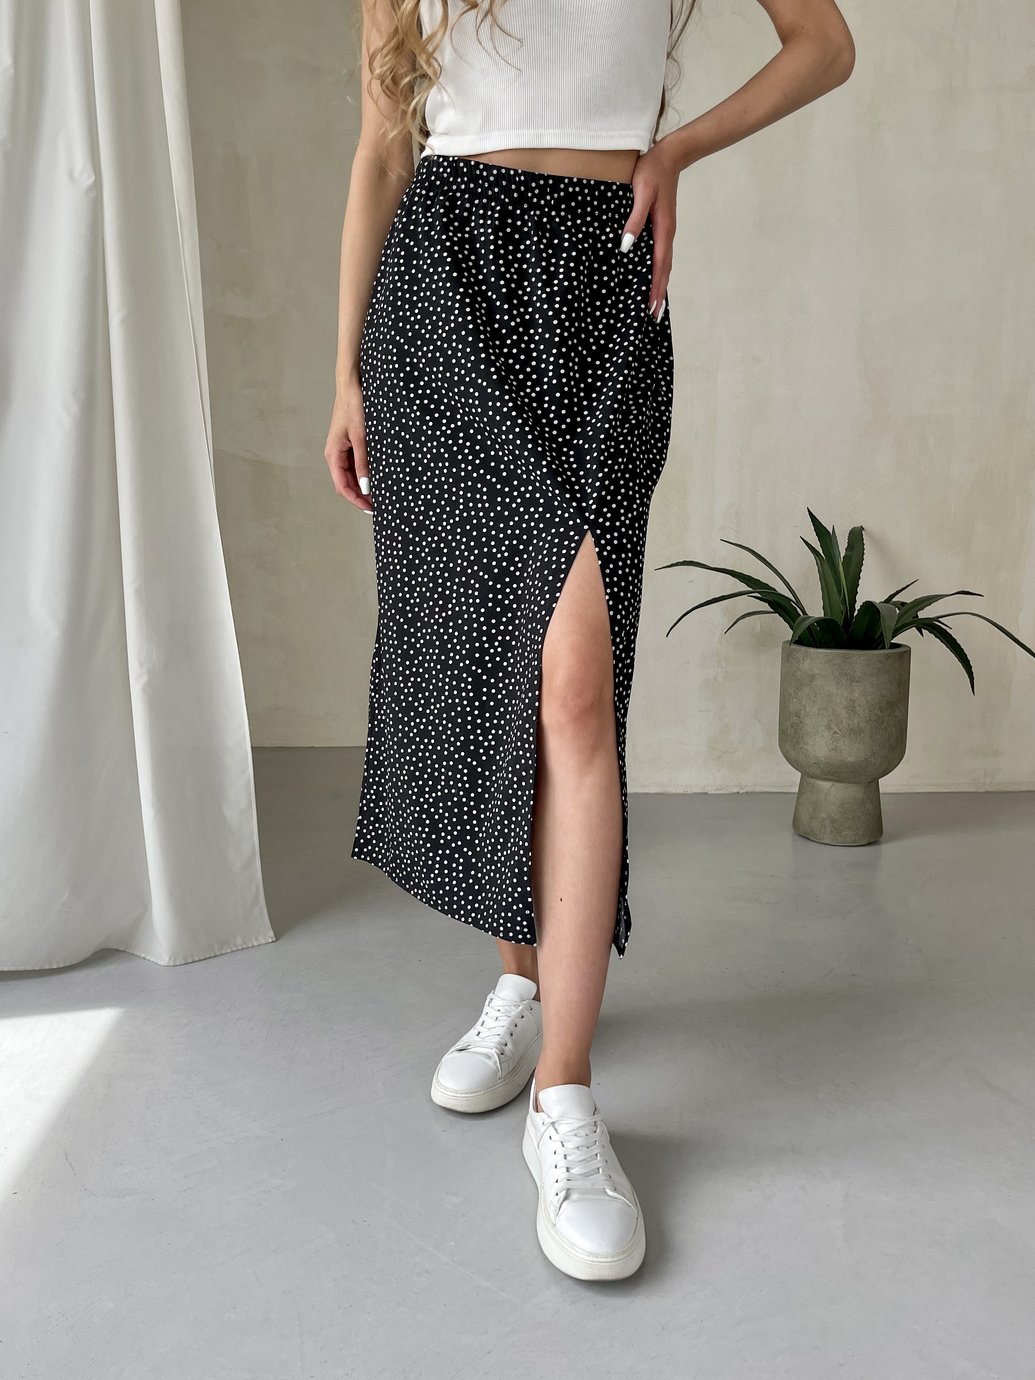 Купить Длинная женская юбка ниже колена с размером в горох Merlini Парма 400000101, размер 42-44 (S-M) в интернет-магазине